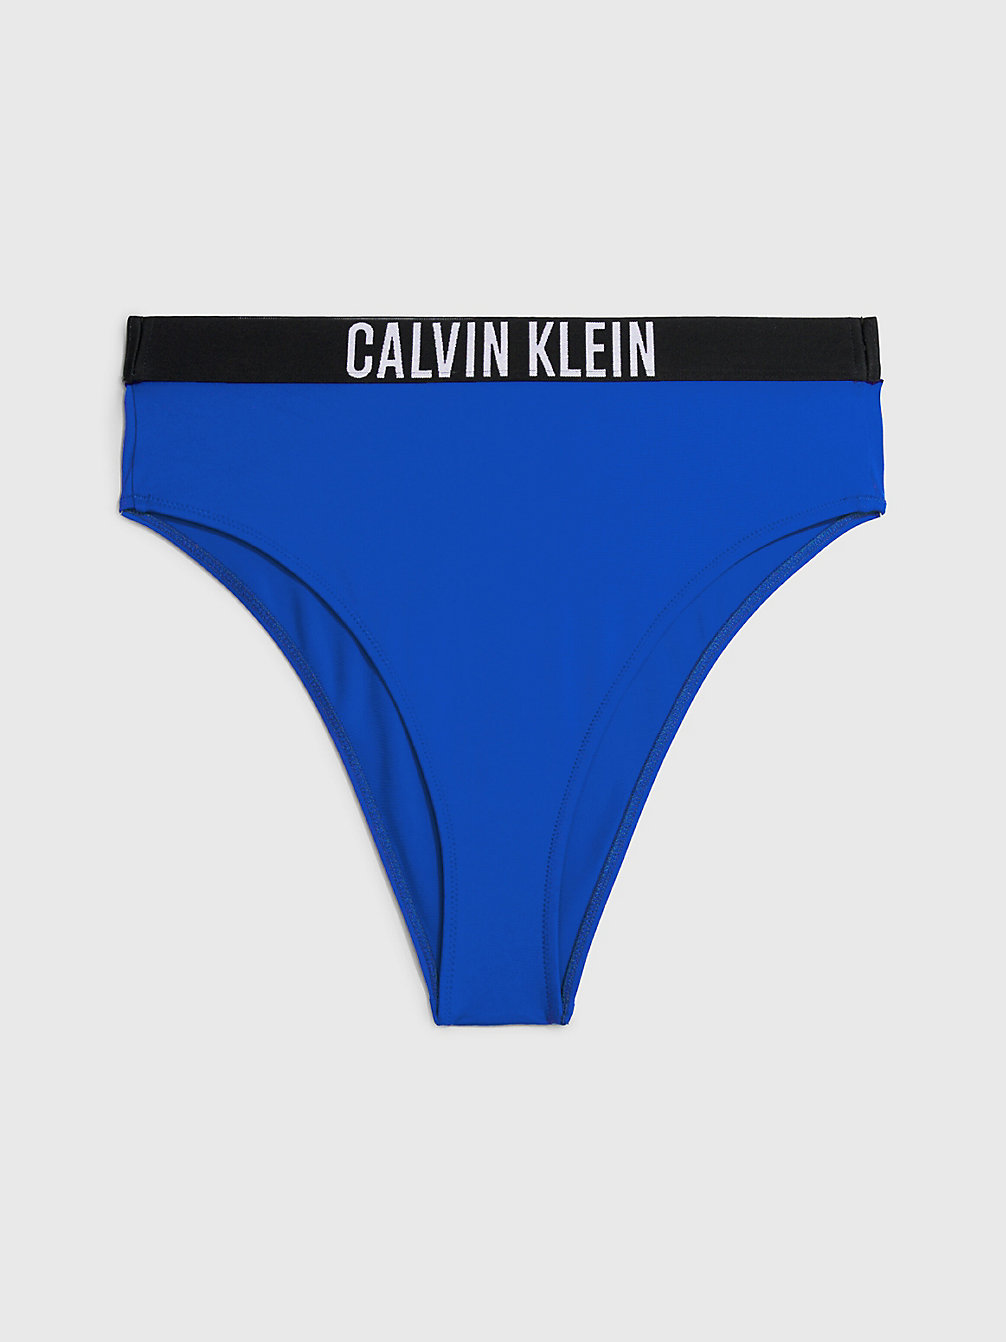 BISTRO BLUE High Waist Bikinihosen - Intense Power undefined Damen Calvin Klein